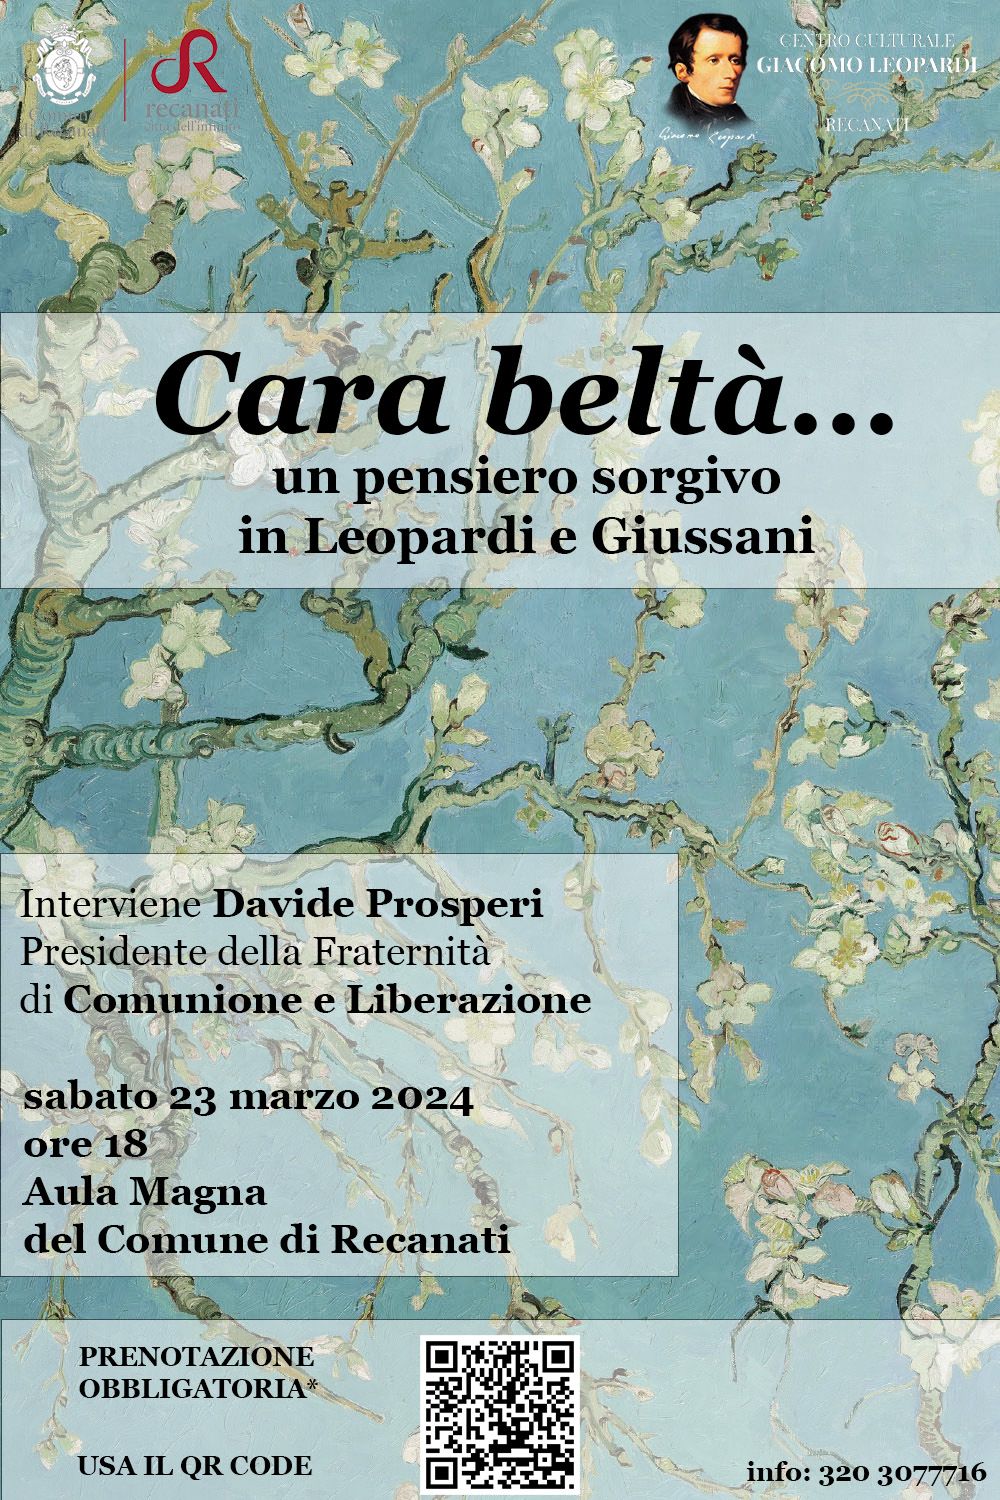 Featured image for “Recanati: Cara beltà…un pensiero sorgivo in Leopardi e Giussani”